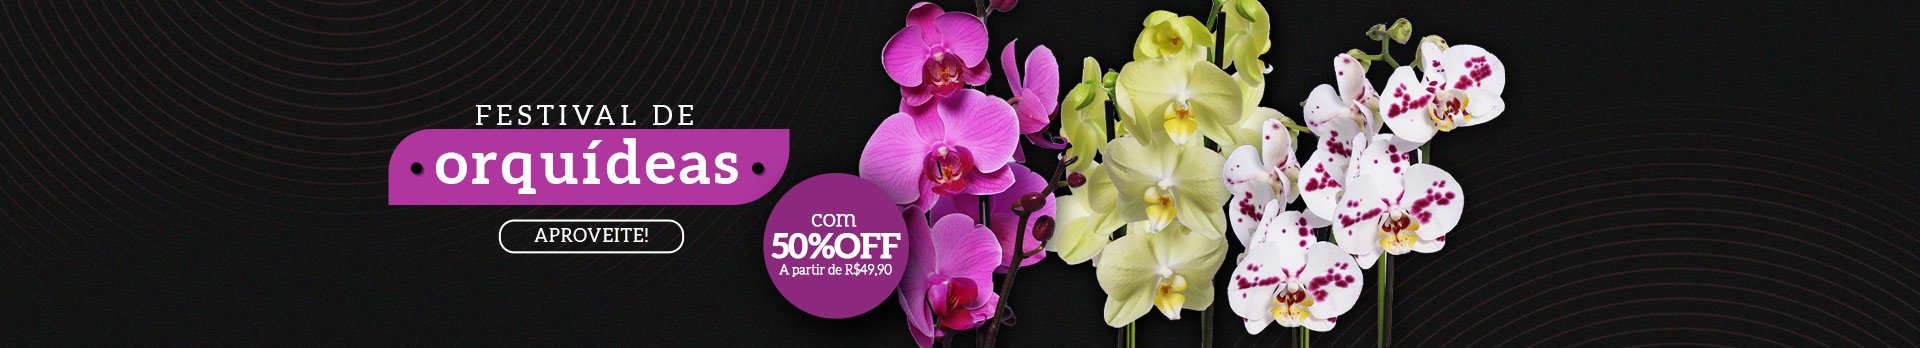 Orquídeas 50% OFF - Super